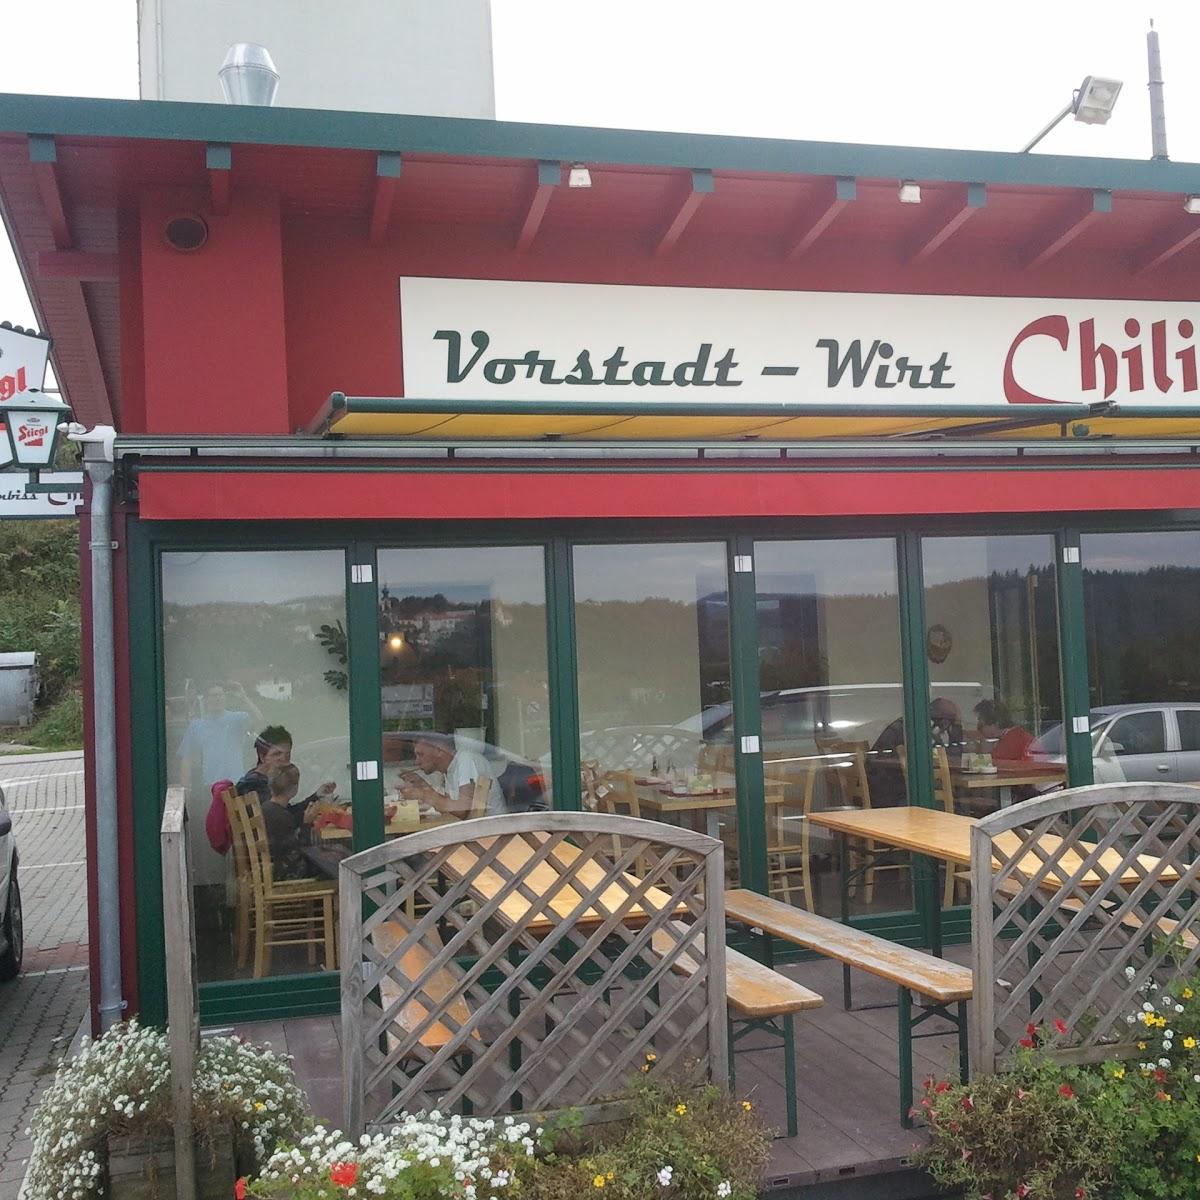 Restaurant "Vorstadt-Wirt Chili" in Friensdorf